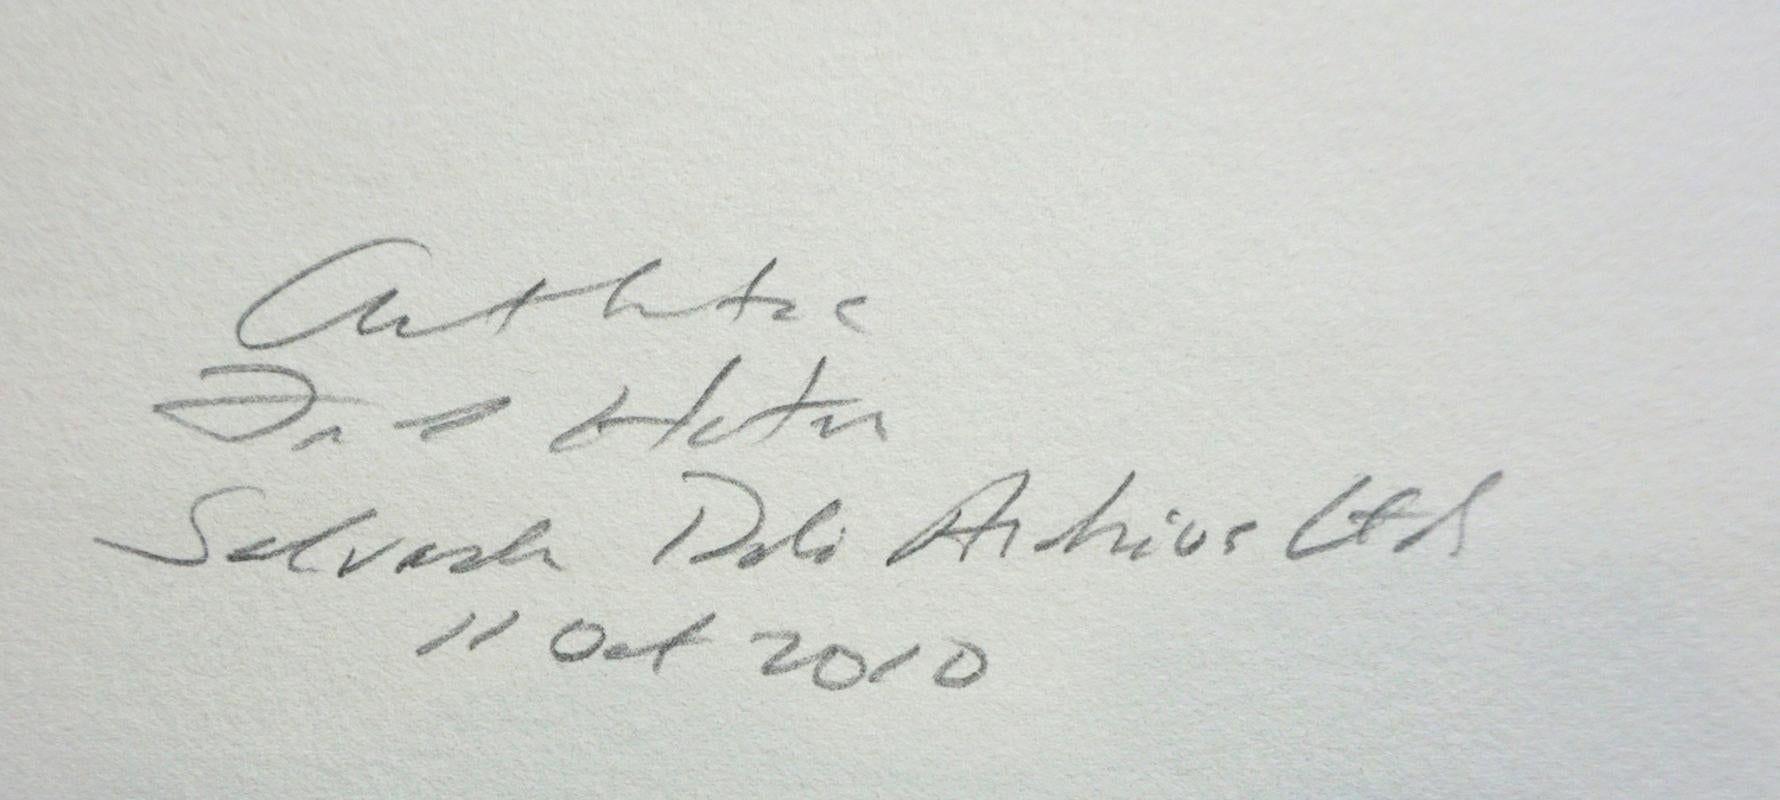 ARTIST: Salvador Dali

TITLE: Hommage a Albrecht Durer Renaissance

MEDIUM: Etching

SIGNED: Hand Signed 

PUBLISHER: Vision Nouvelle

EDITION NUMBER: EA

MEASUREMENTS: 15.3